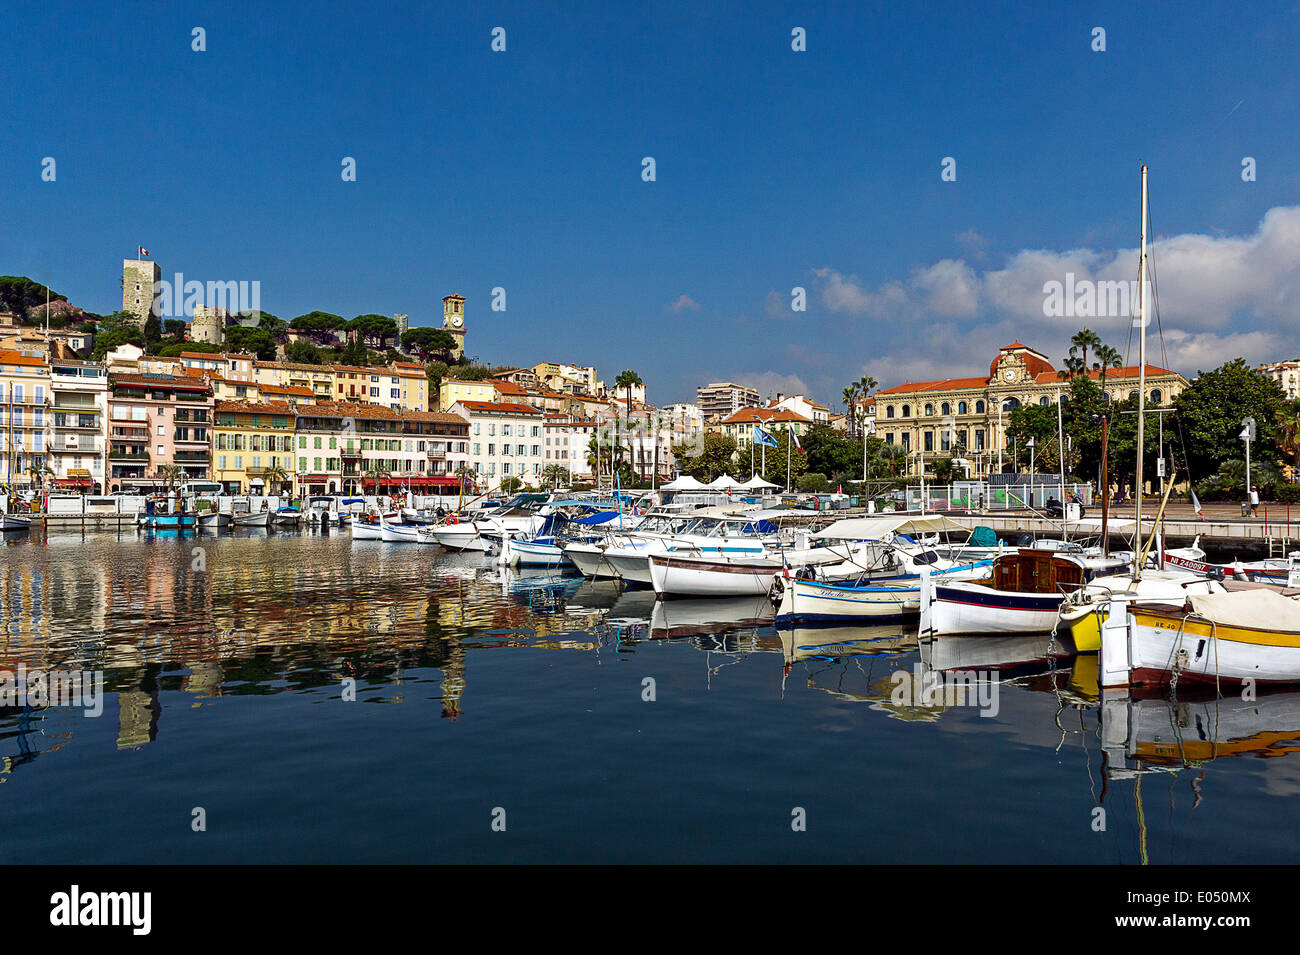 L'Europa, Francia, Alpes-Maritimes, Cannes. La città vecchia e il porto vecchio. Foto Stock